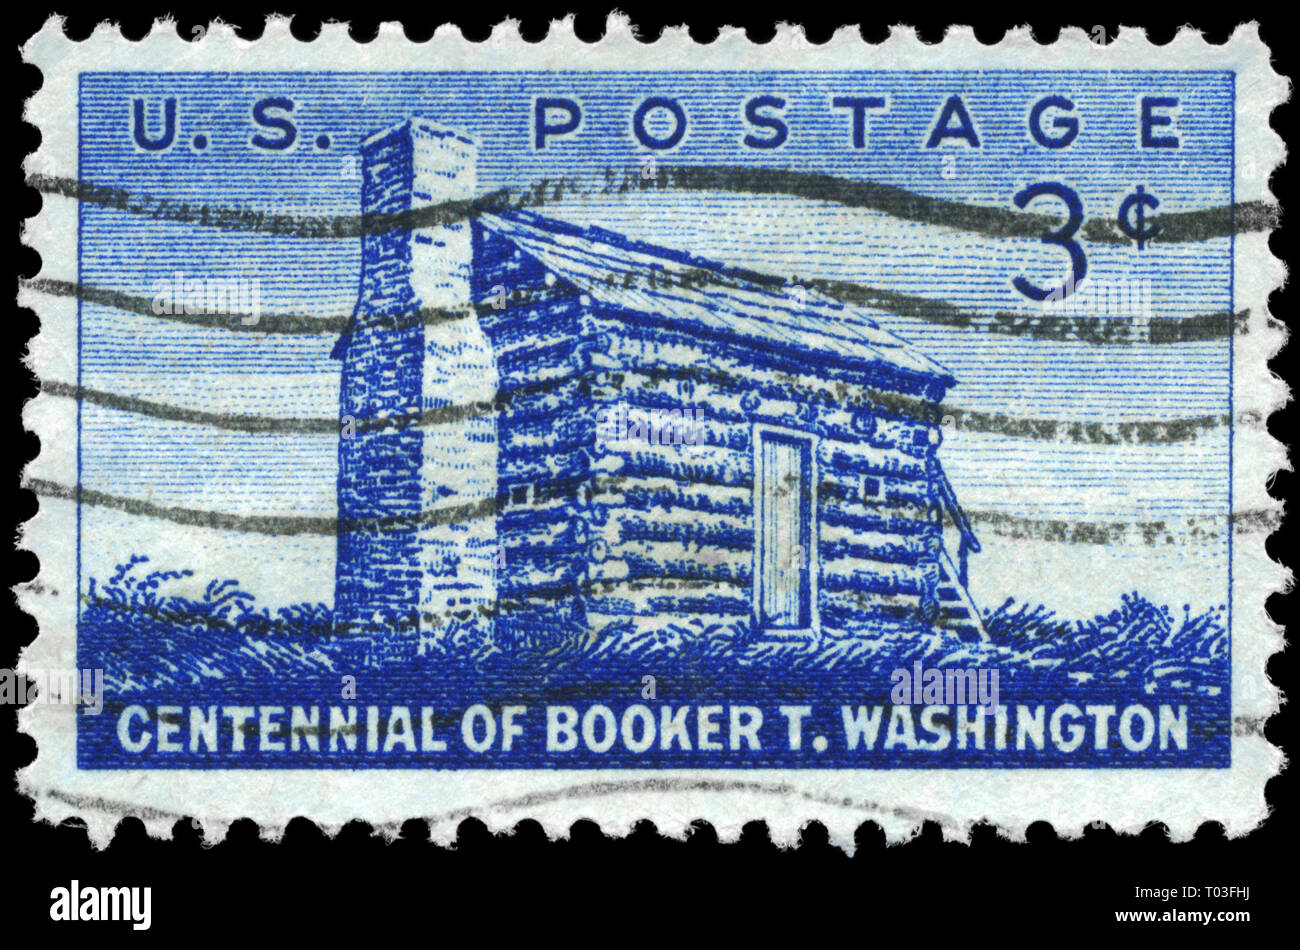 USA - VERS 1956 : timbre imprimé aux États-Unis montre Log Cabin, consacré à Booker T. Washington (1856-1915), éducateur noir, vers 1956 Banque D'Images